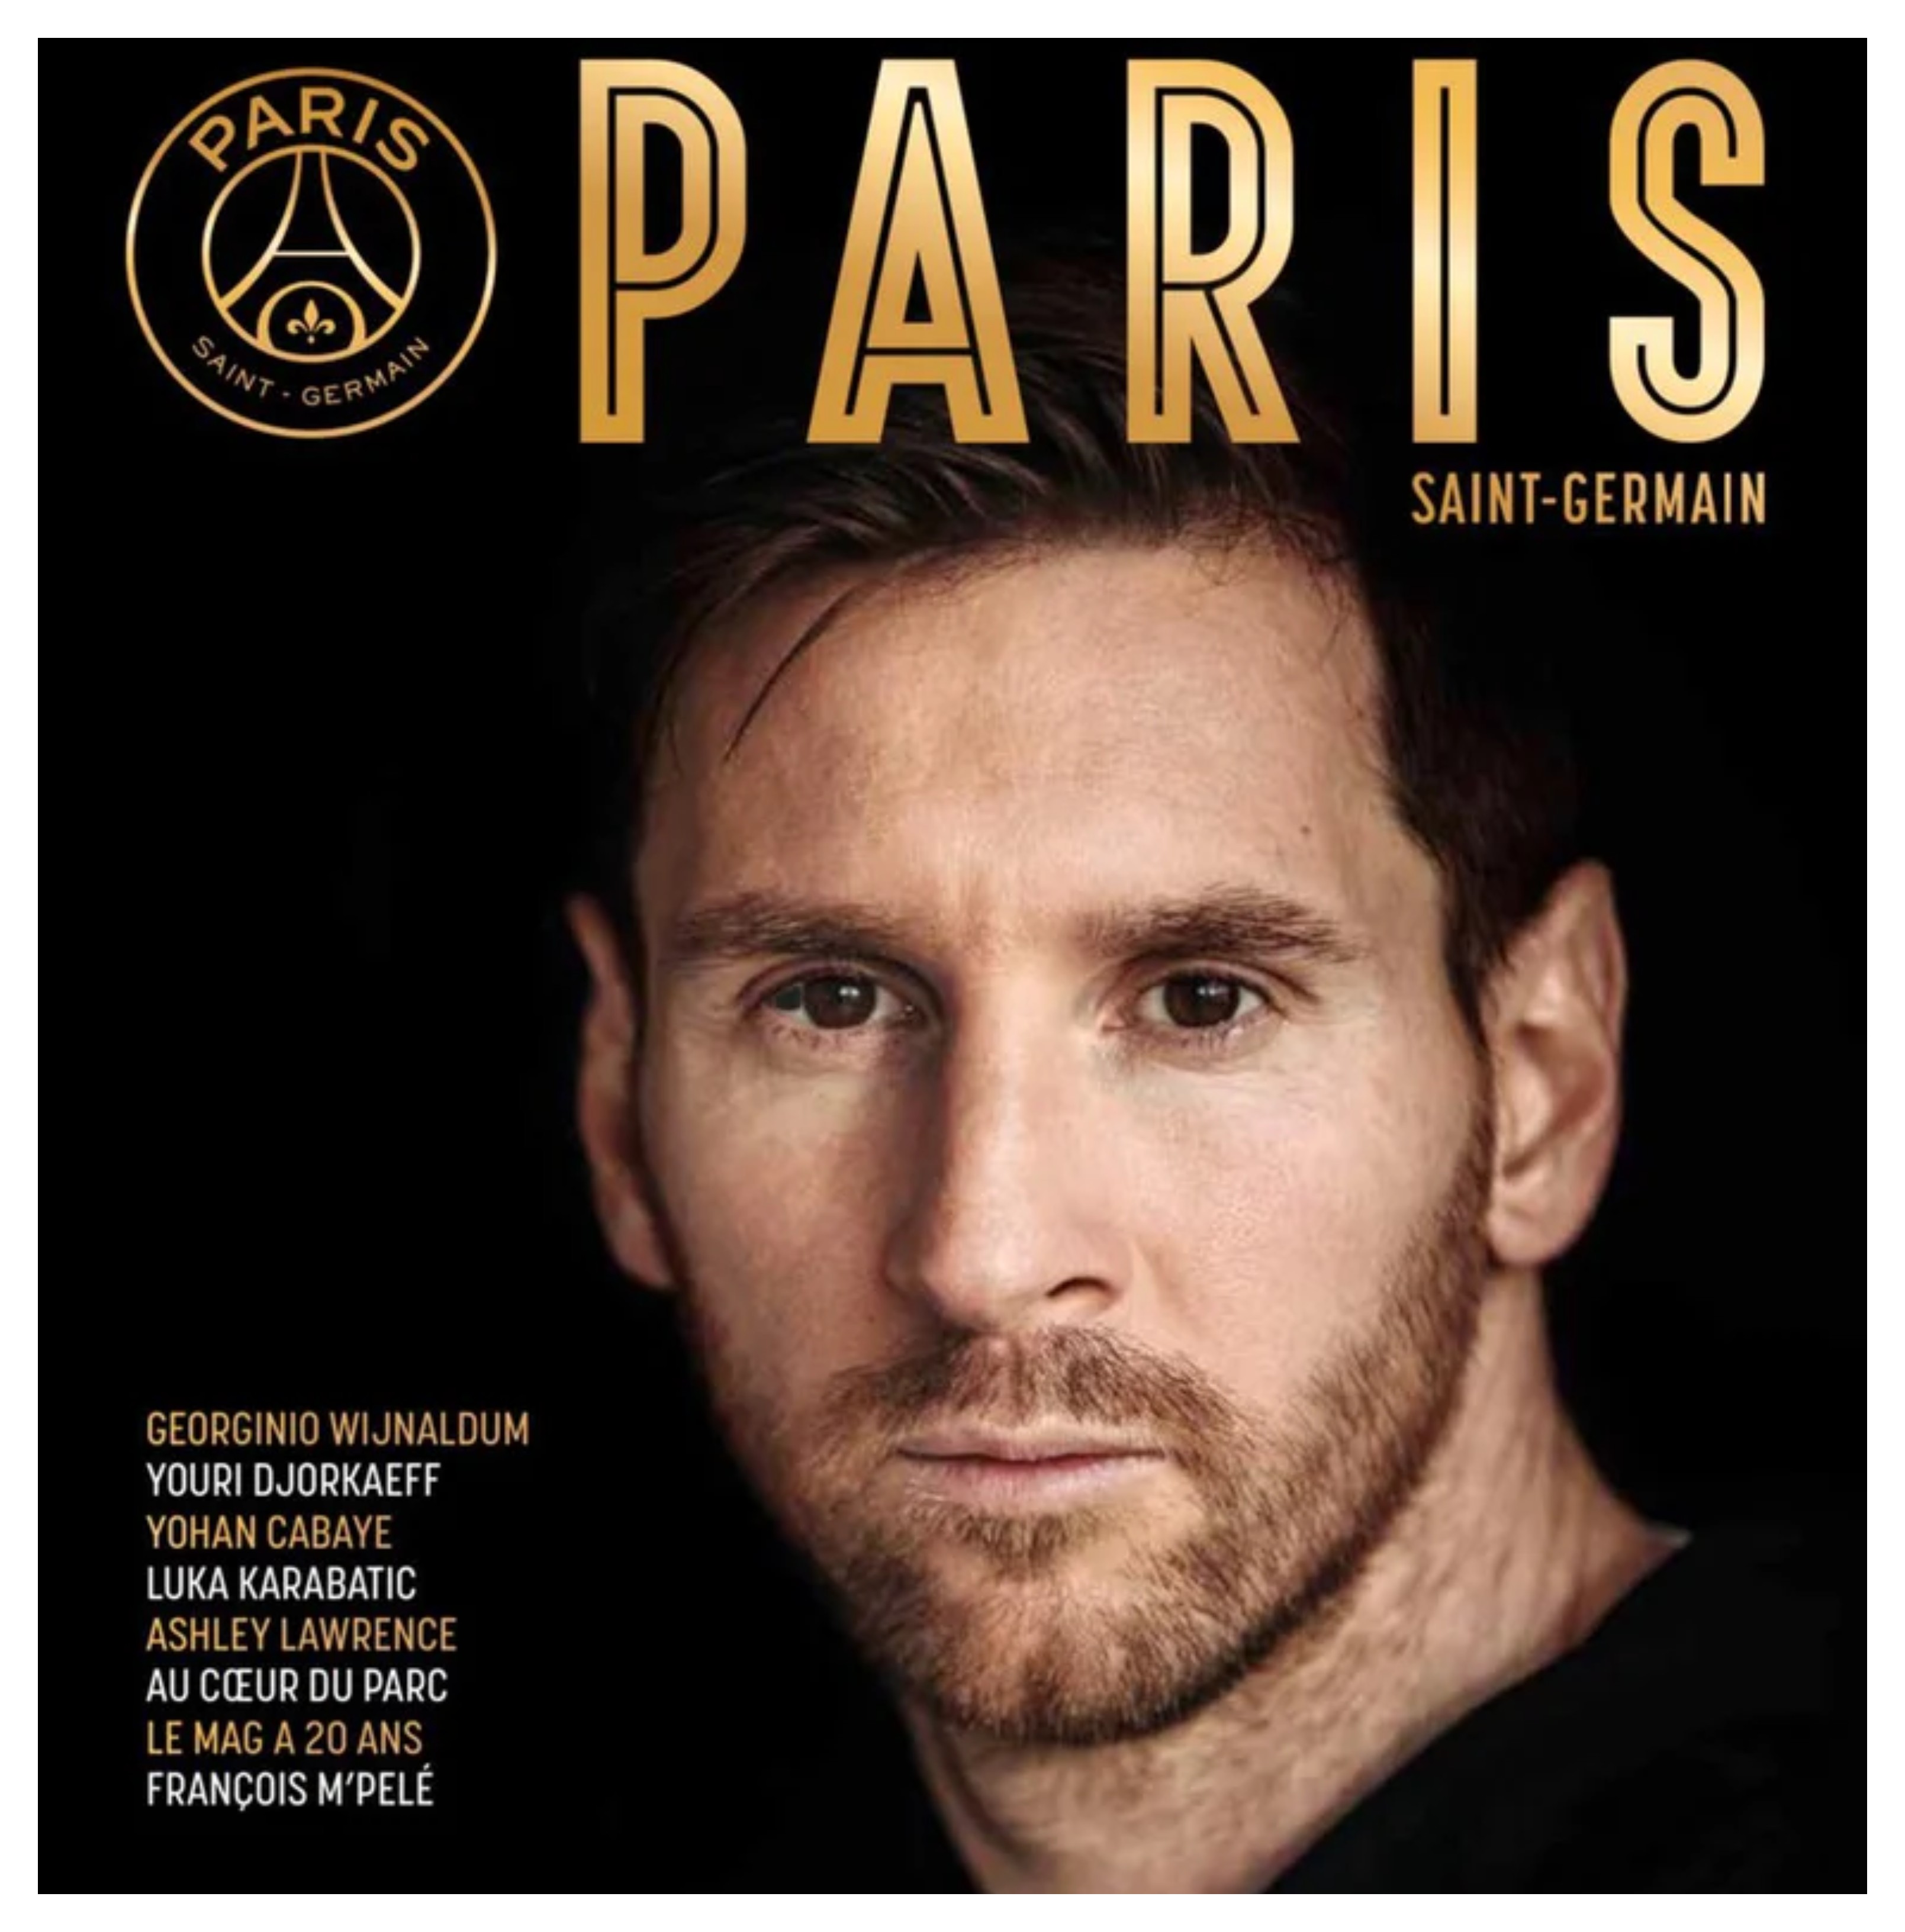 Esta es la portada de la revista del Paris Saint Germain con Lionel Messi como foto principal. Foto PSG.